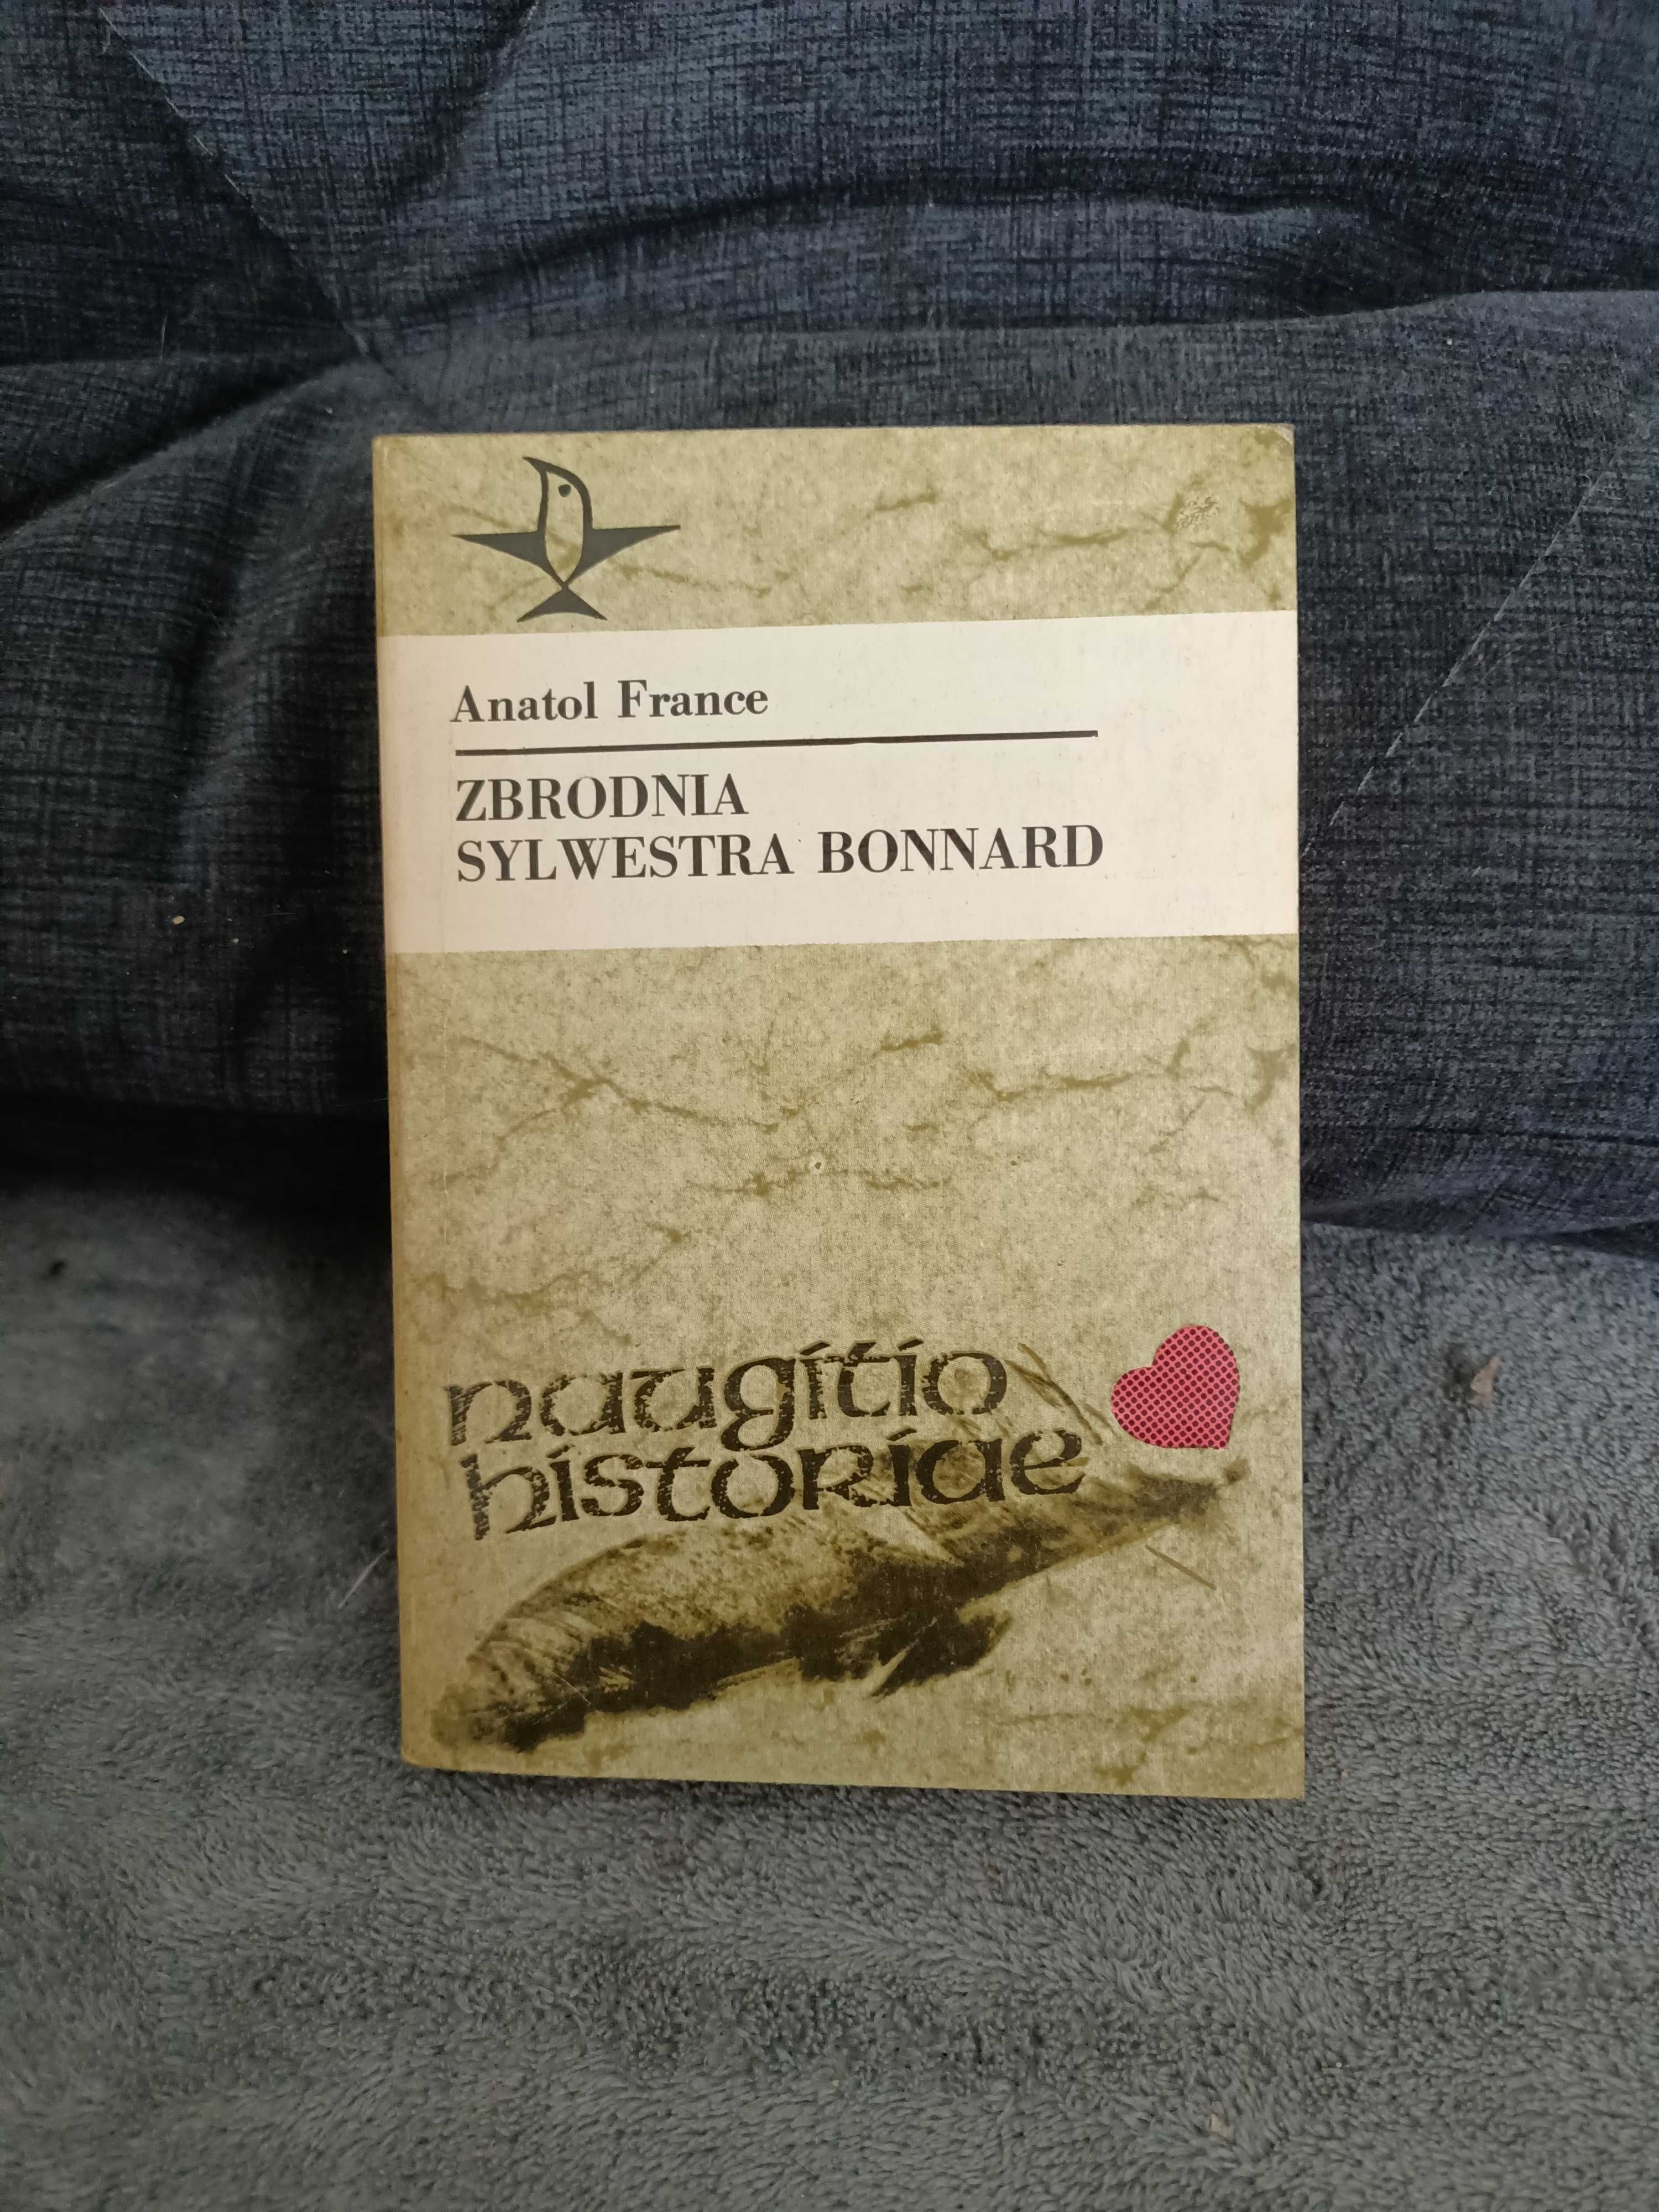 A. France " Zbrodnia Sylwestra Bonnard "